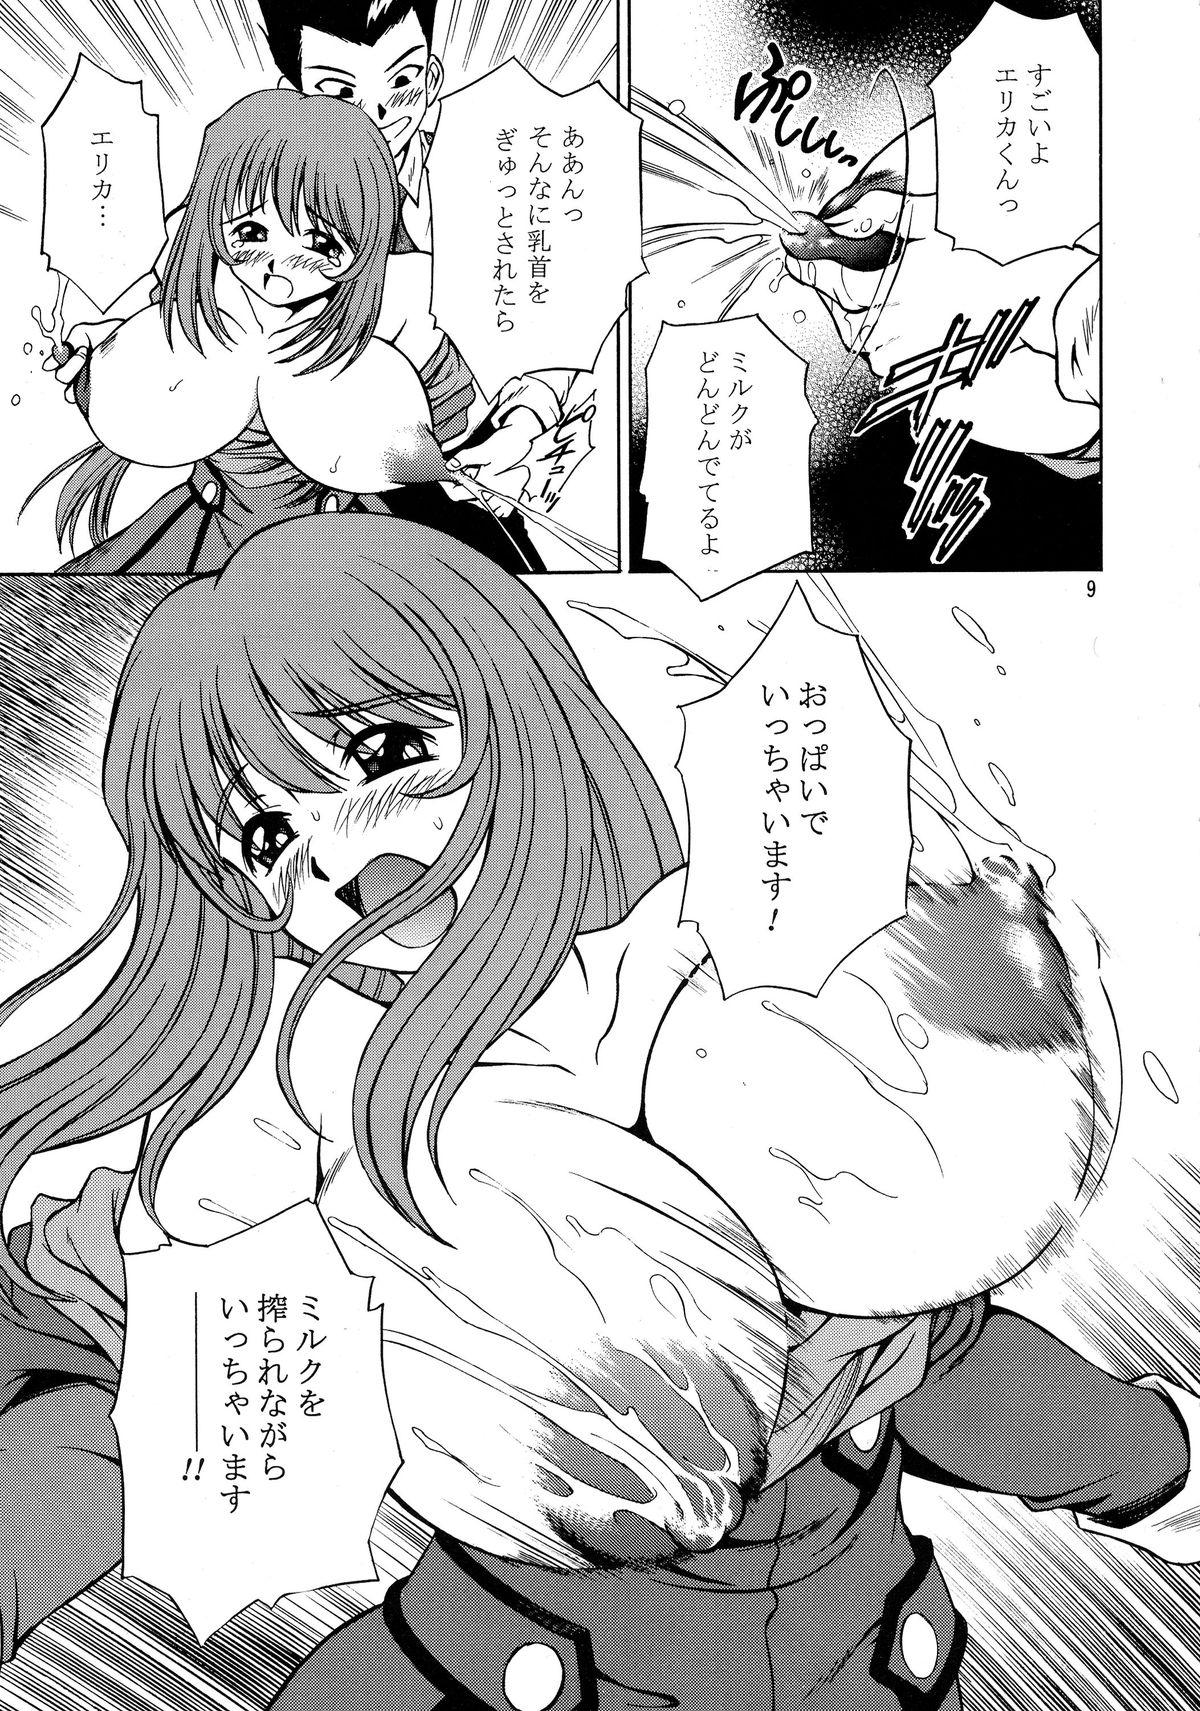 Hardfuck TRANCE MODE - Sakura taisen Cougars - Page 10